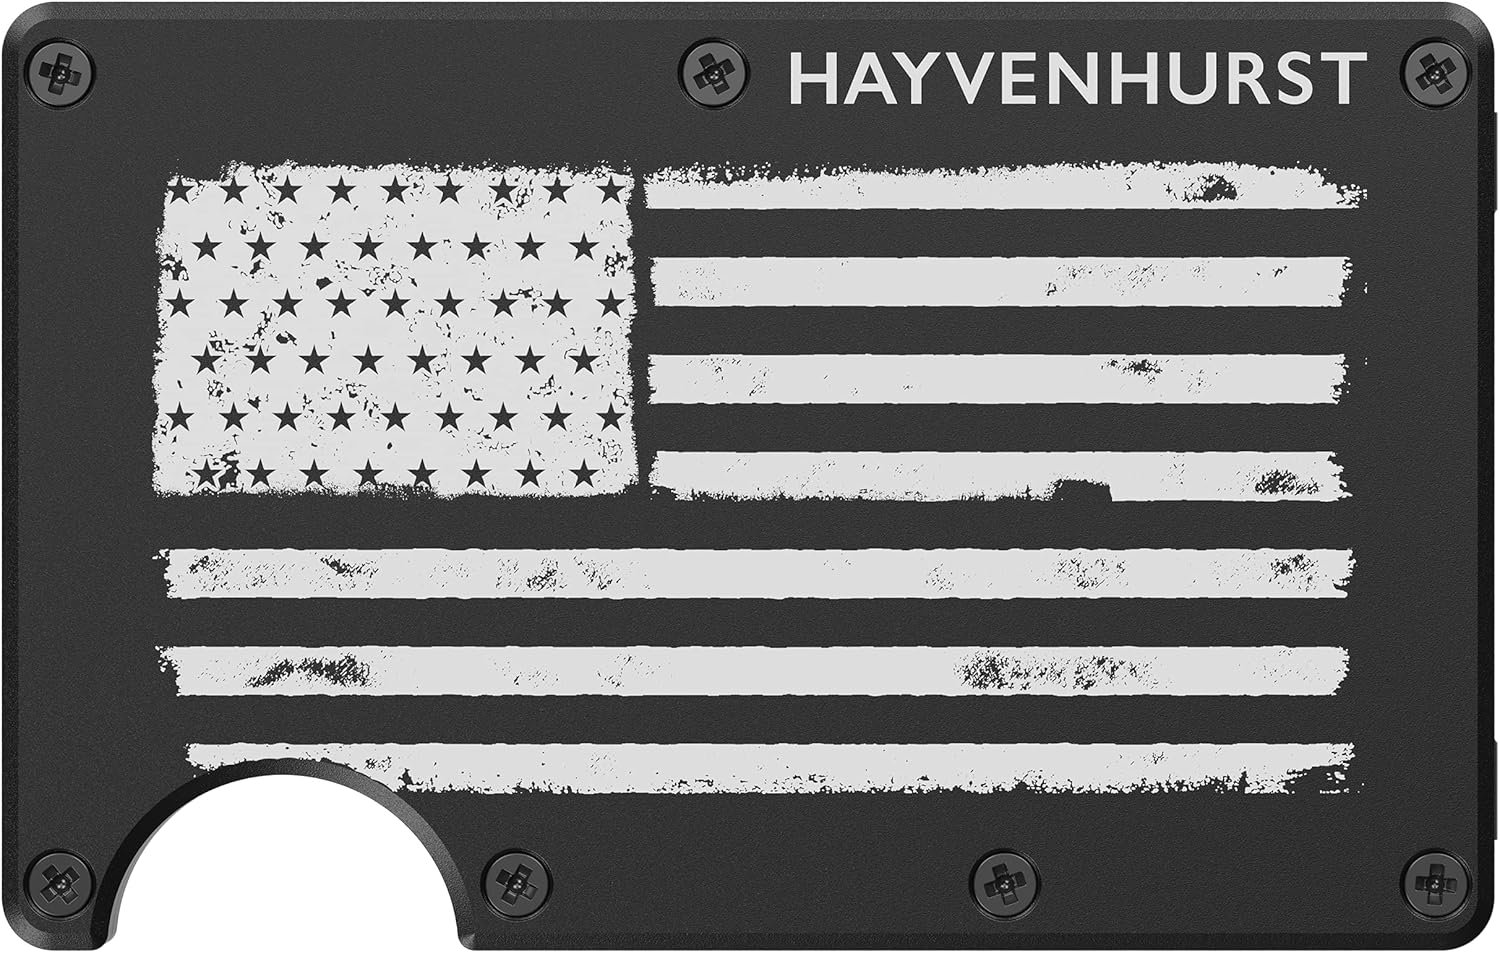 Hayvenhurst Metal Wallet Review